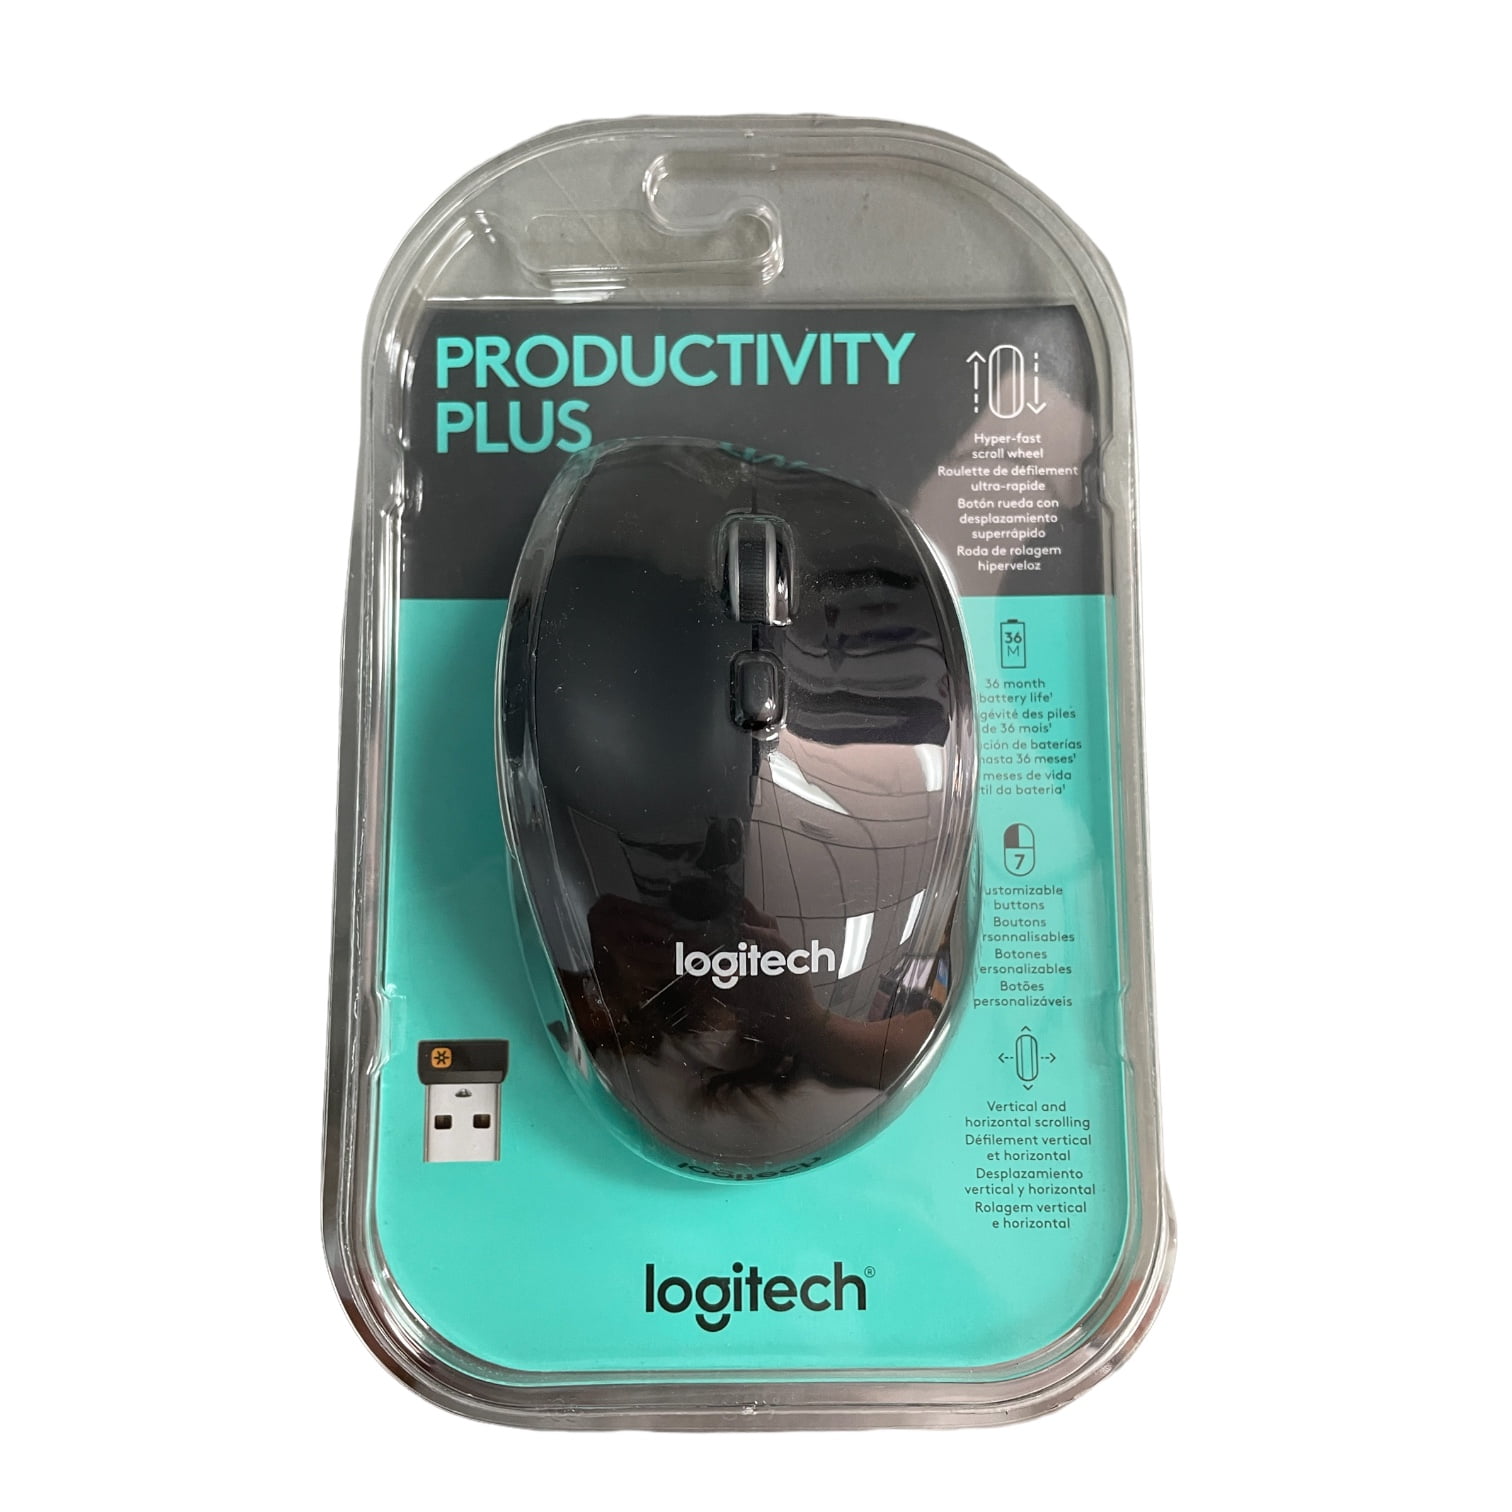 Logitech Productivity Plus Mouse, 910-005746, Black, Includes Batteries - Walmart.com